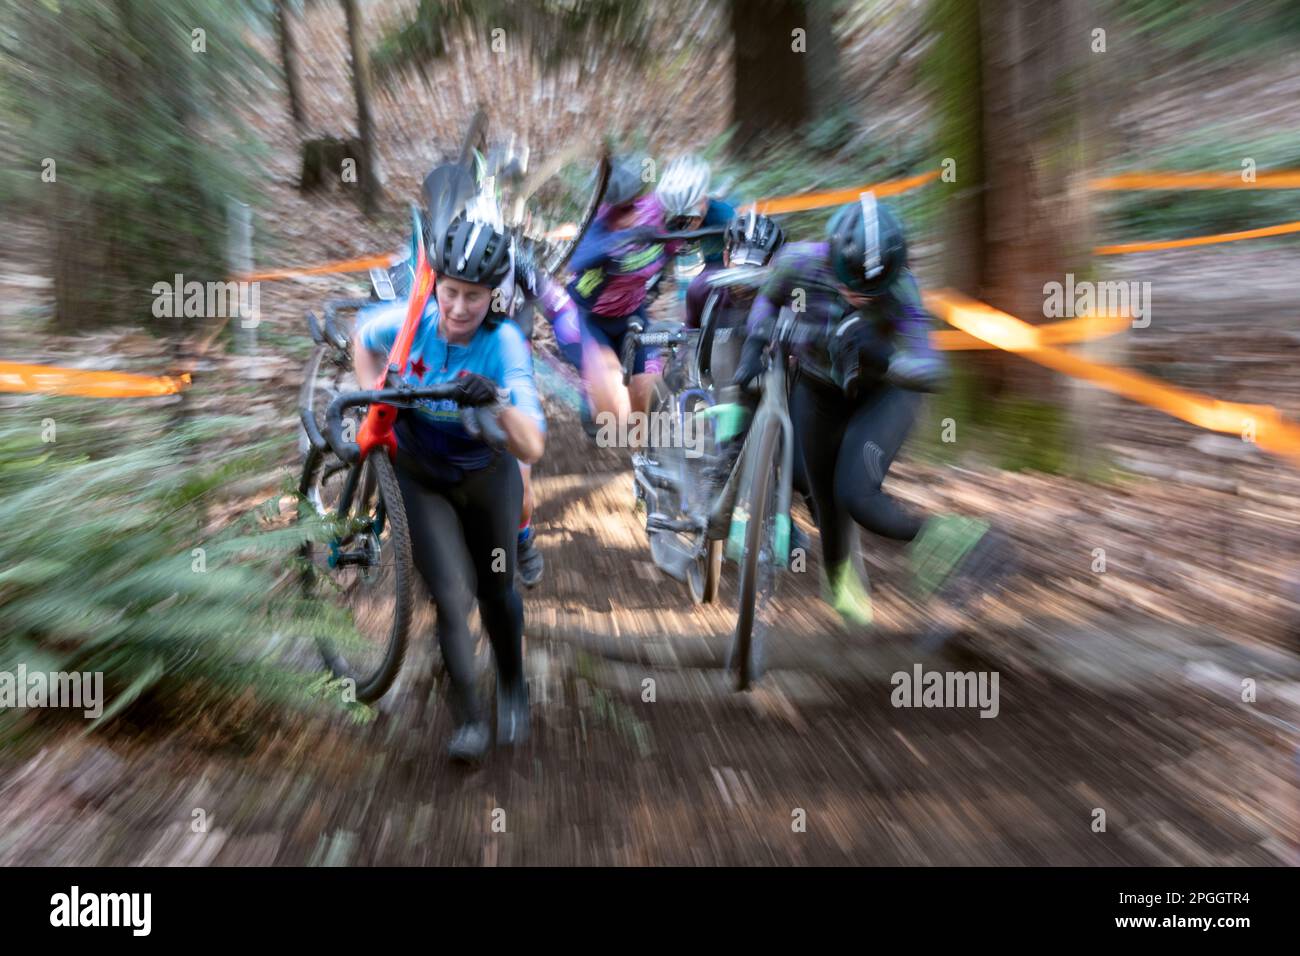 WA24111-00 Washington - Frau, die in einem Cyclocross-Rennen im Westen Washingtons mitmacht. Stockfoto